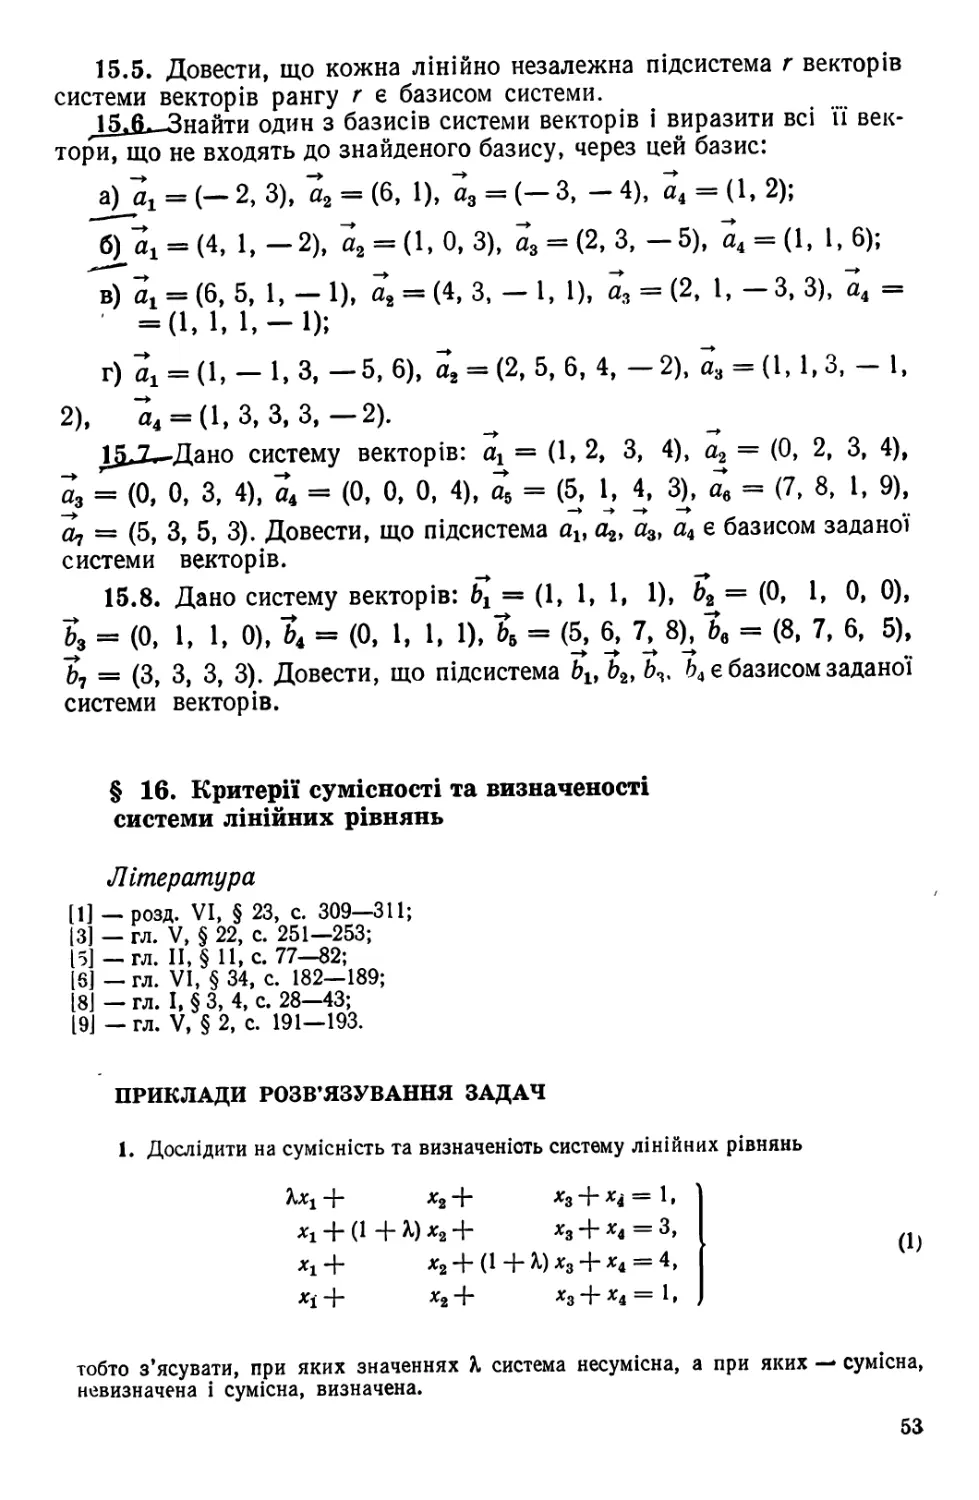 § 16.  Критерії сумісності та визначеності системи лінійних рівнянь